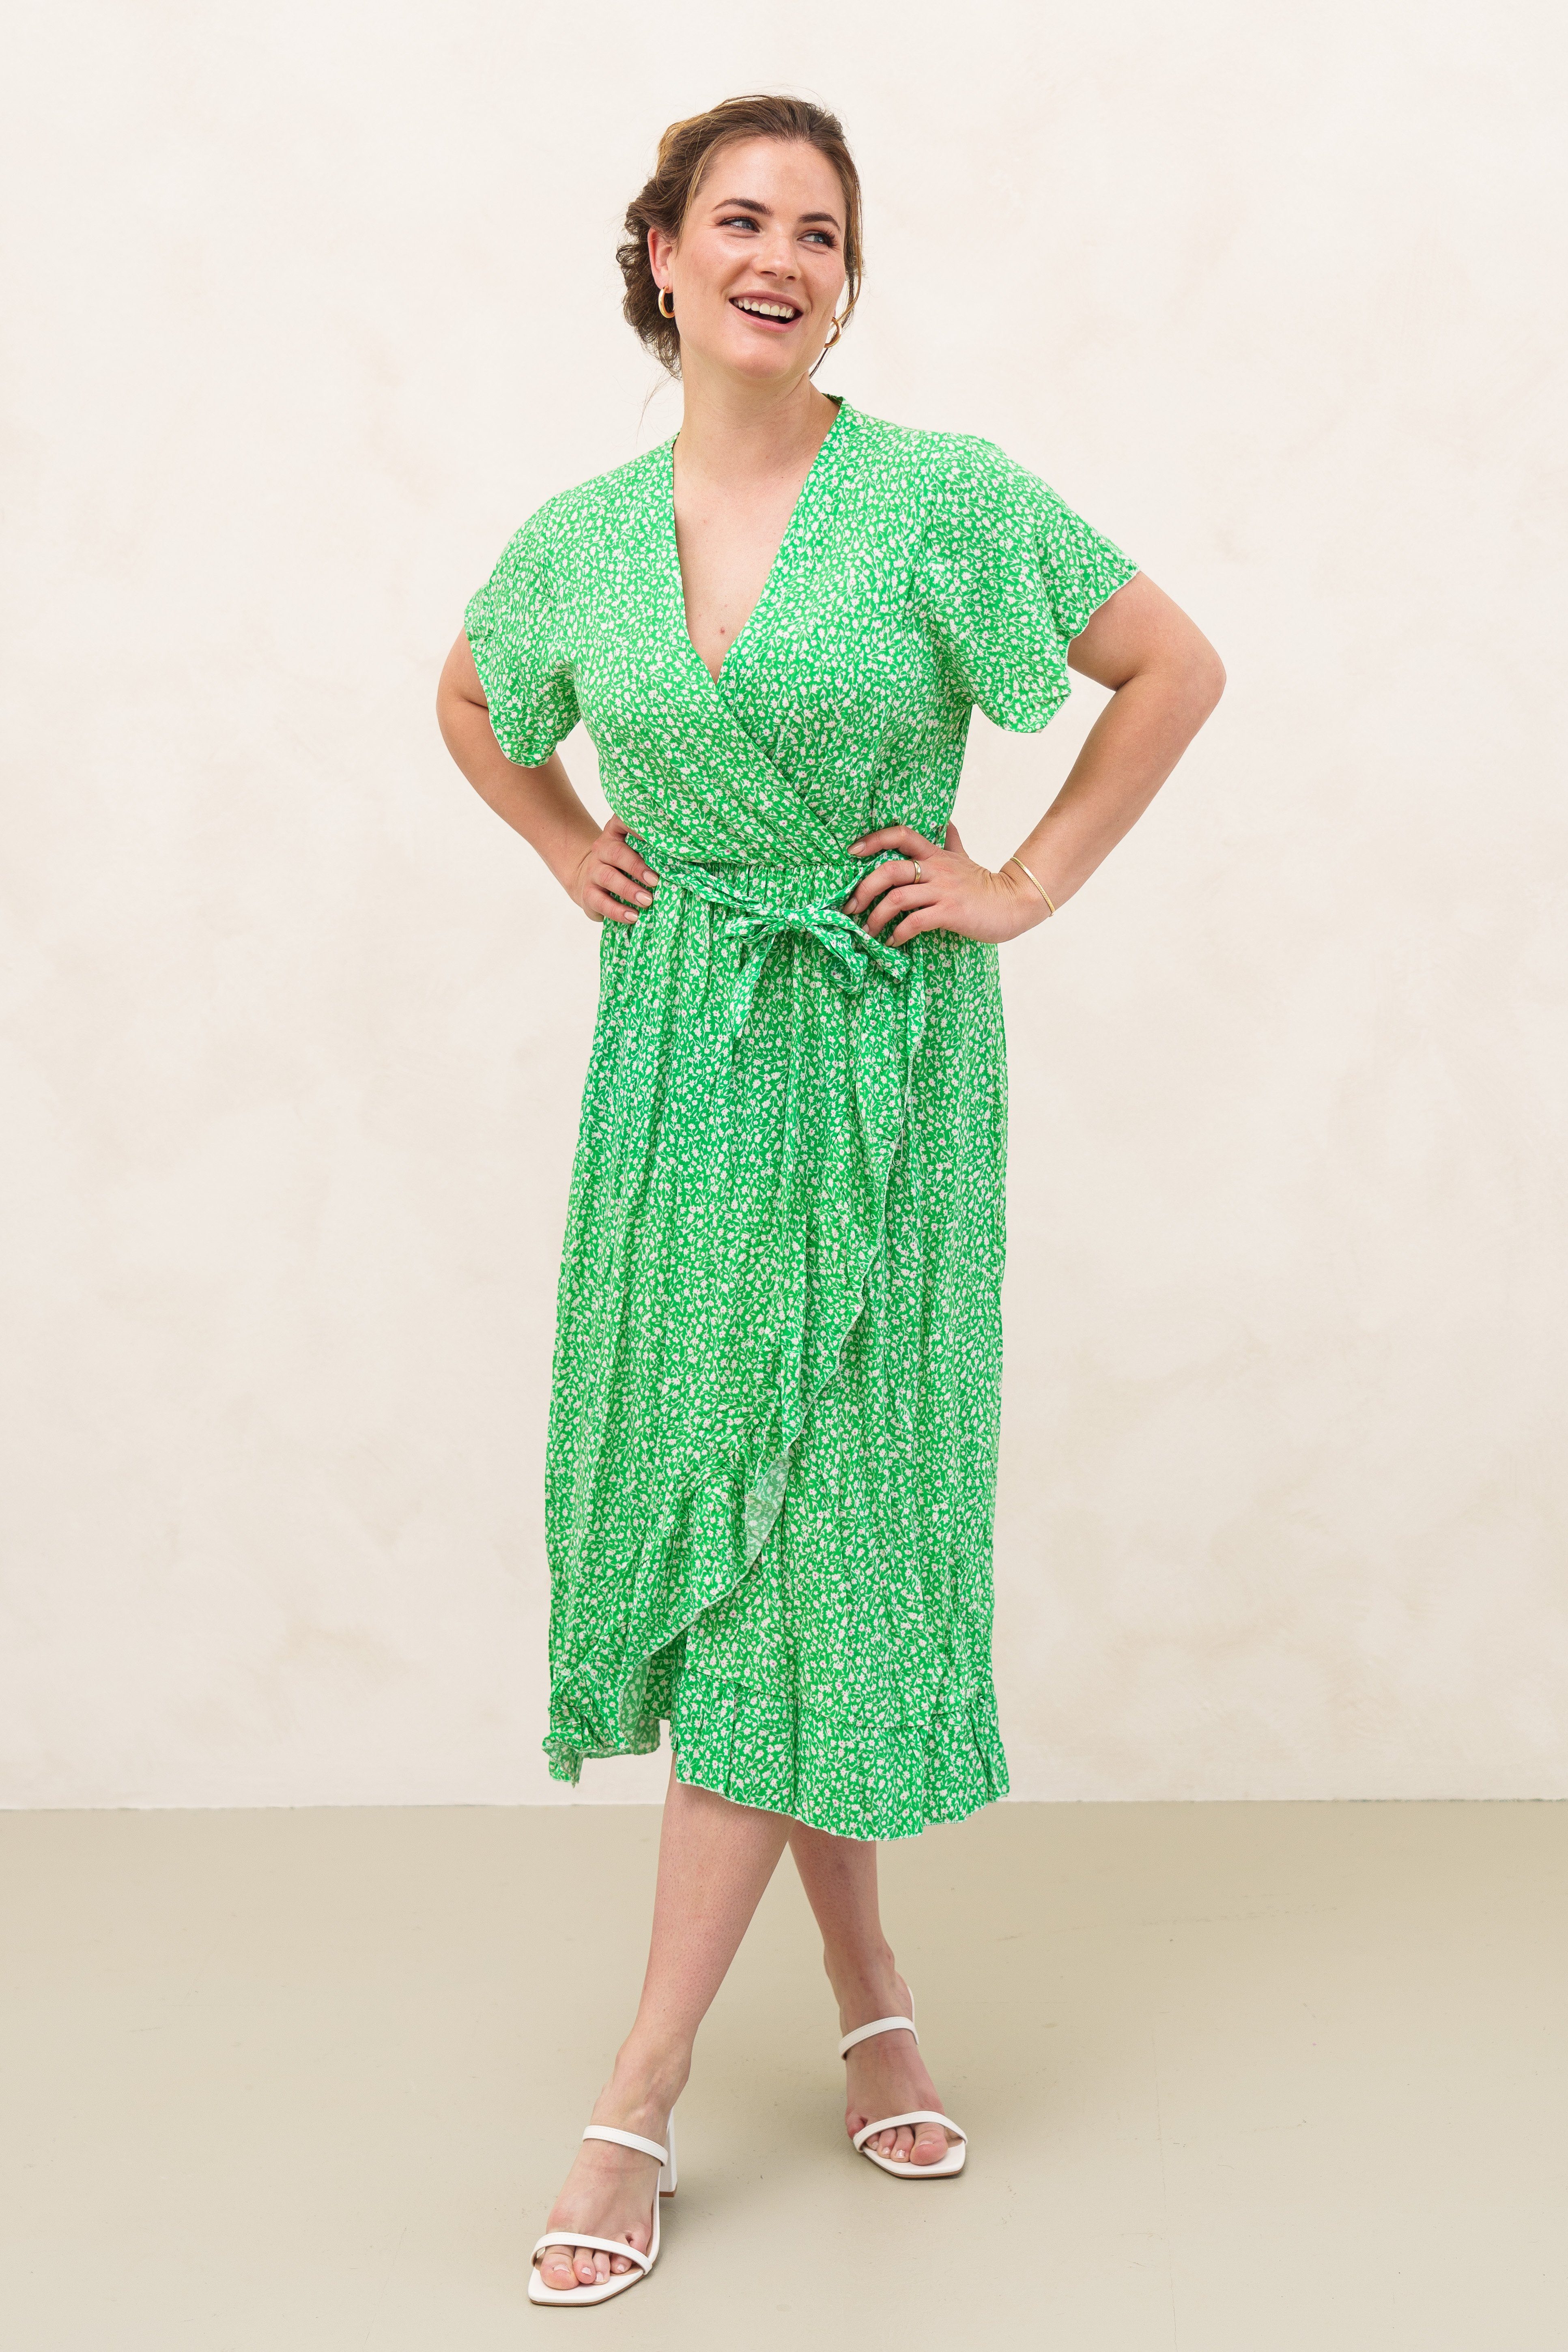 Lelü Fashion Sommerkleid Maxikleid in Wickeloptik durch einen Gürtel lässt sich das Kleid individuell taillieren